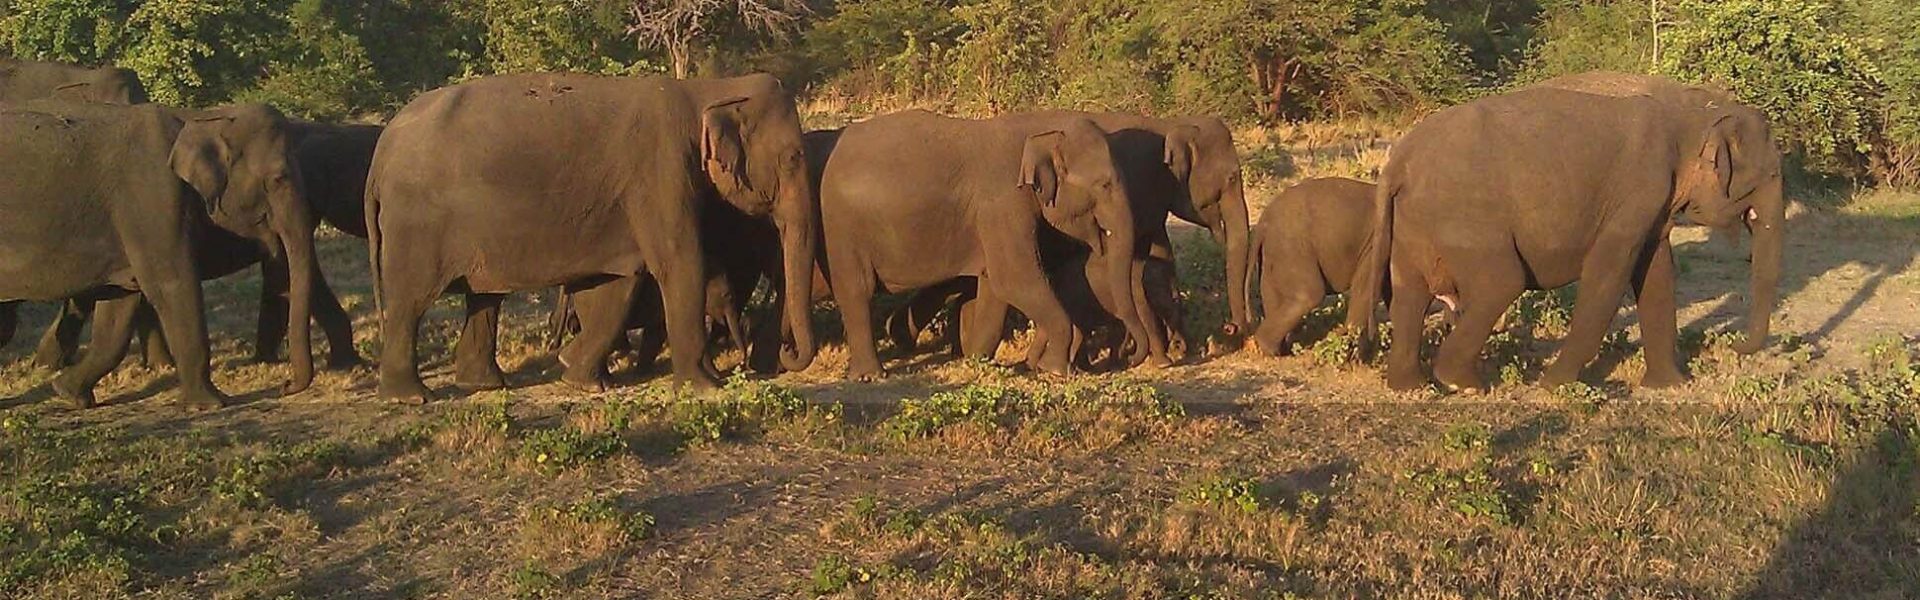 Elefantes en el Parque nacional de Minneriya